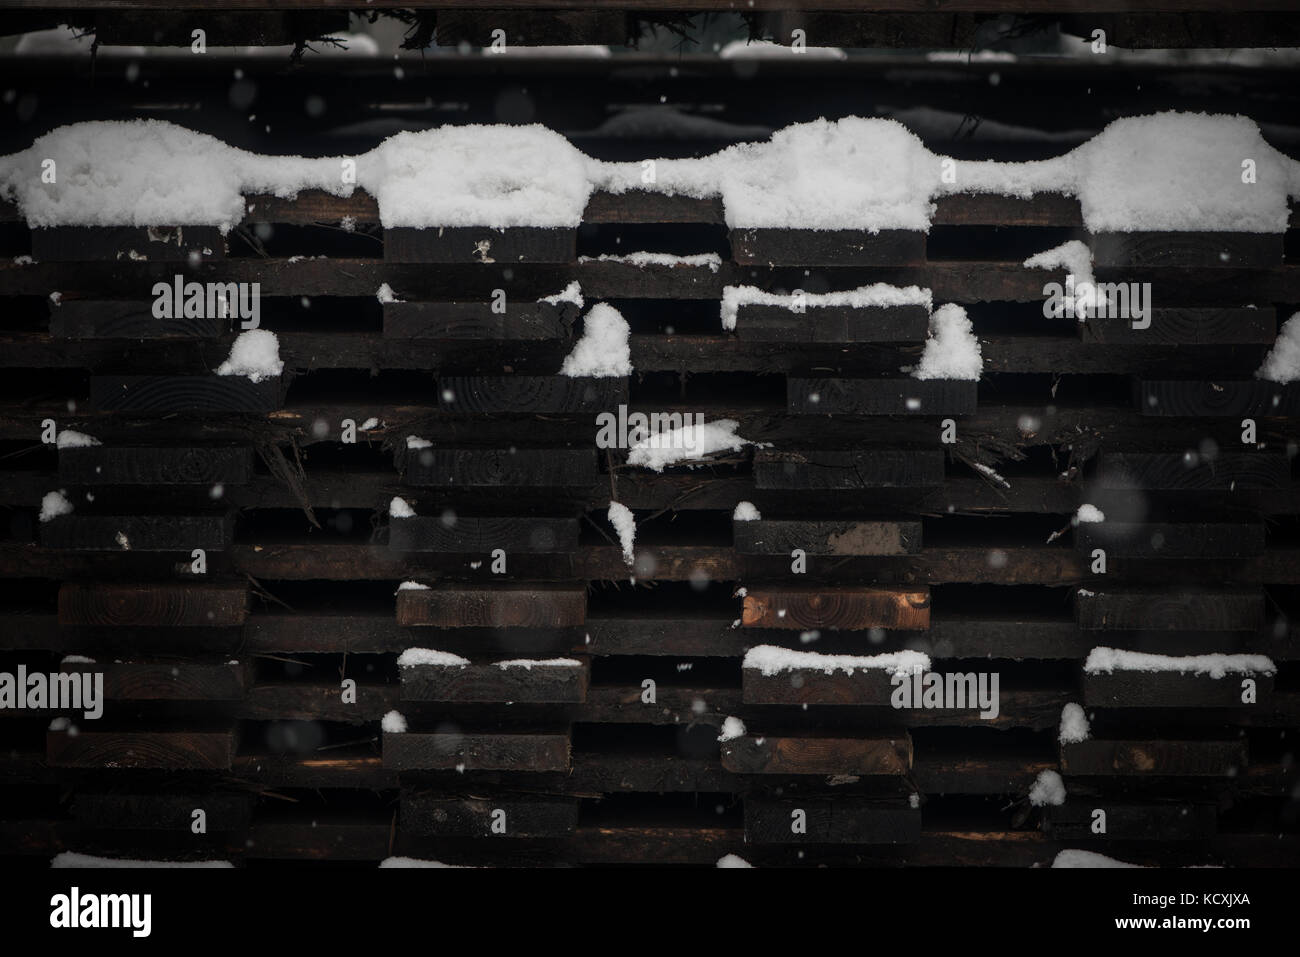 Des piles de bois de construction en hiver, recouvert de neige Banque D'Images